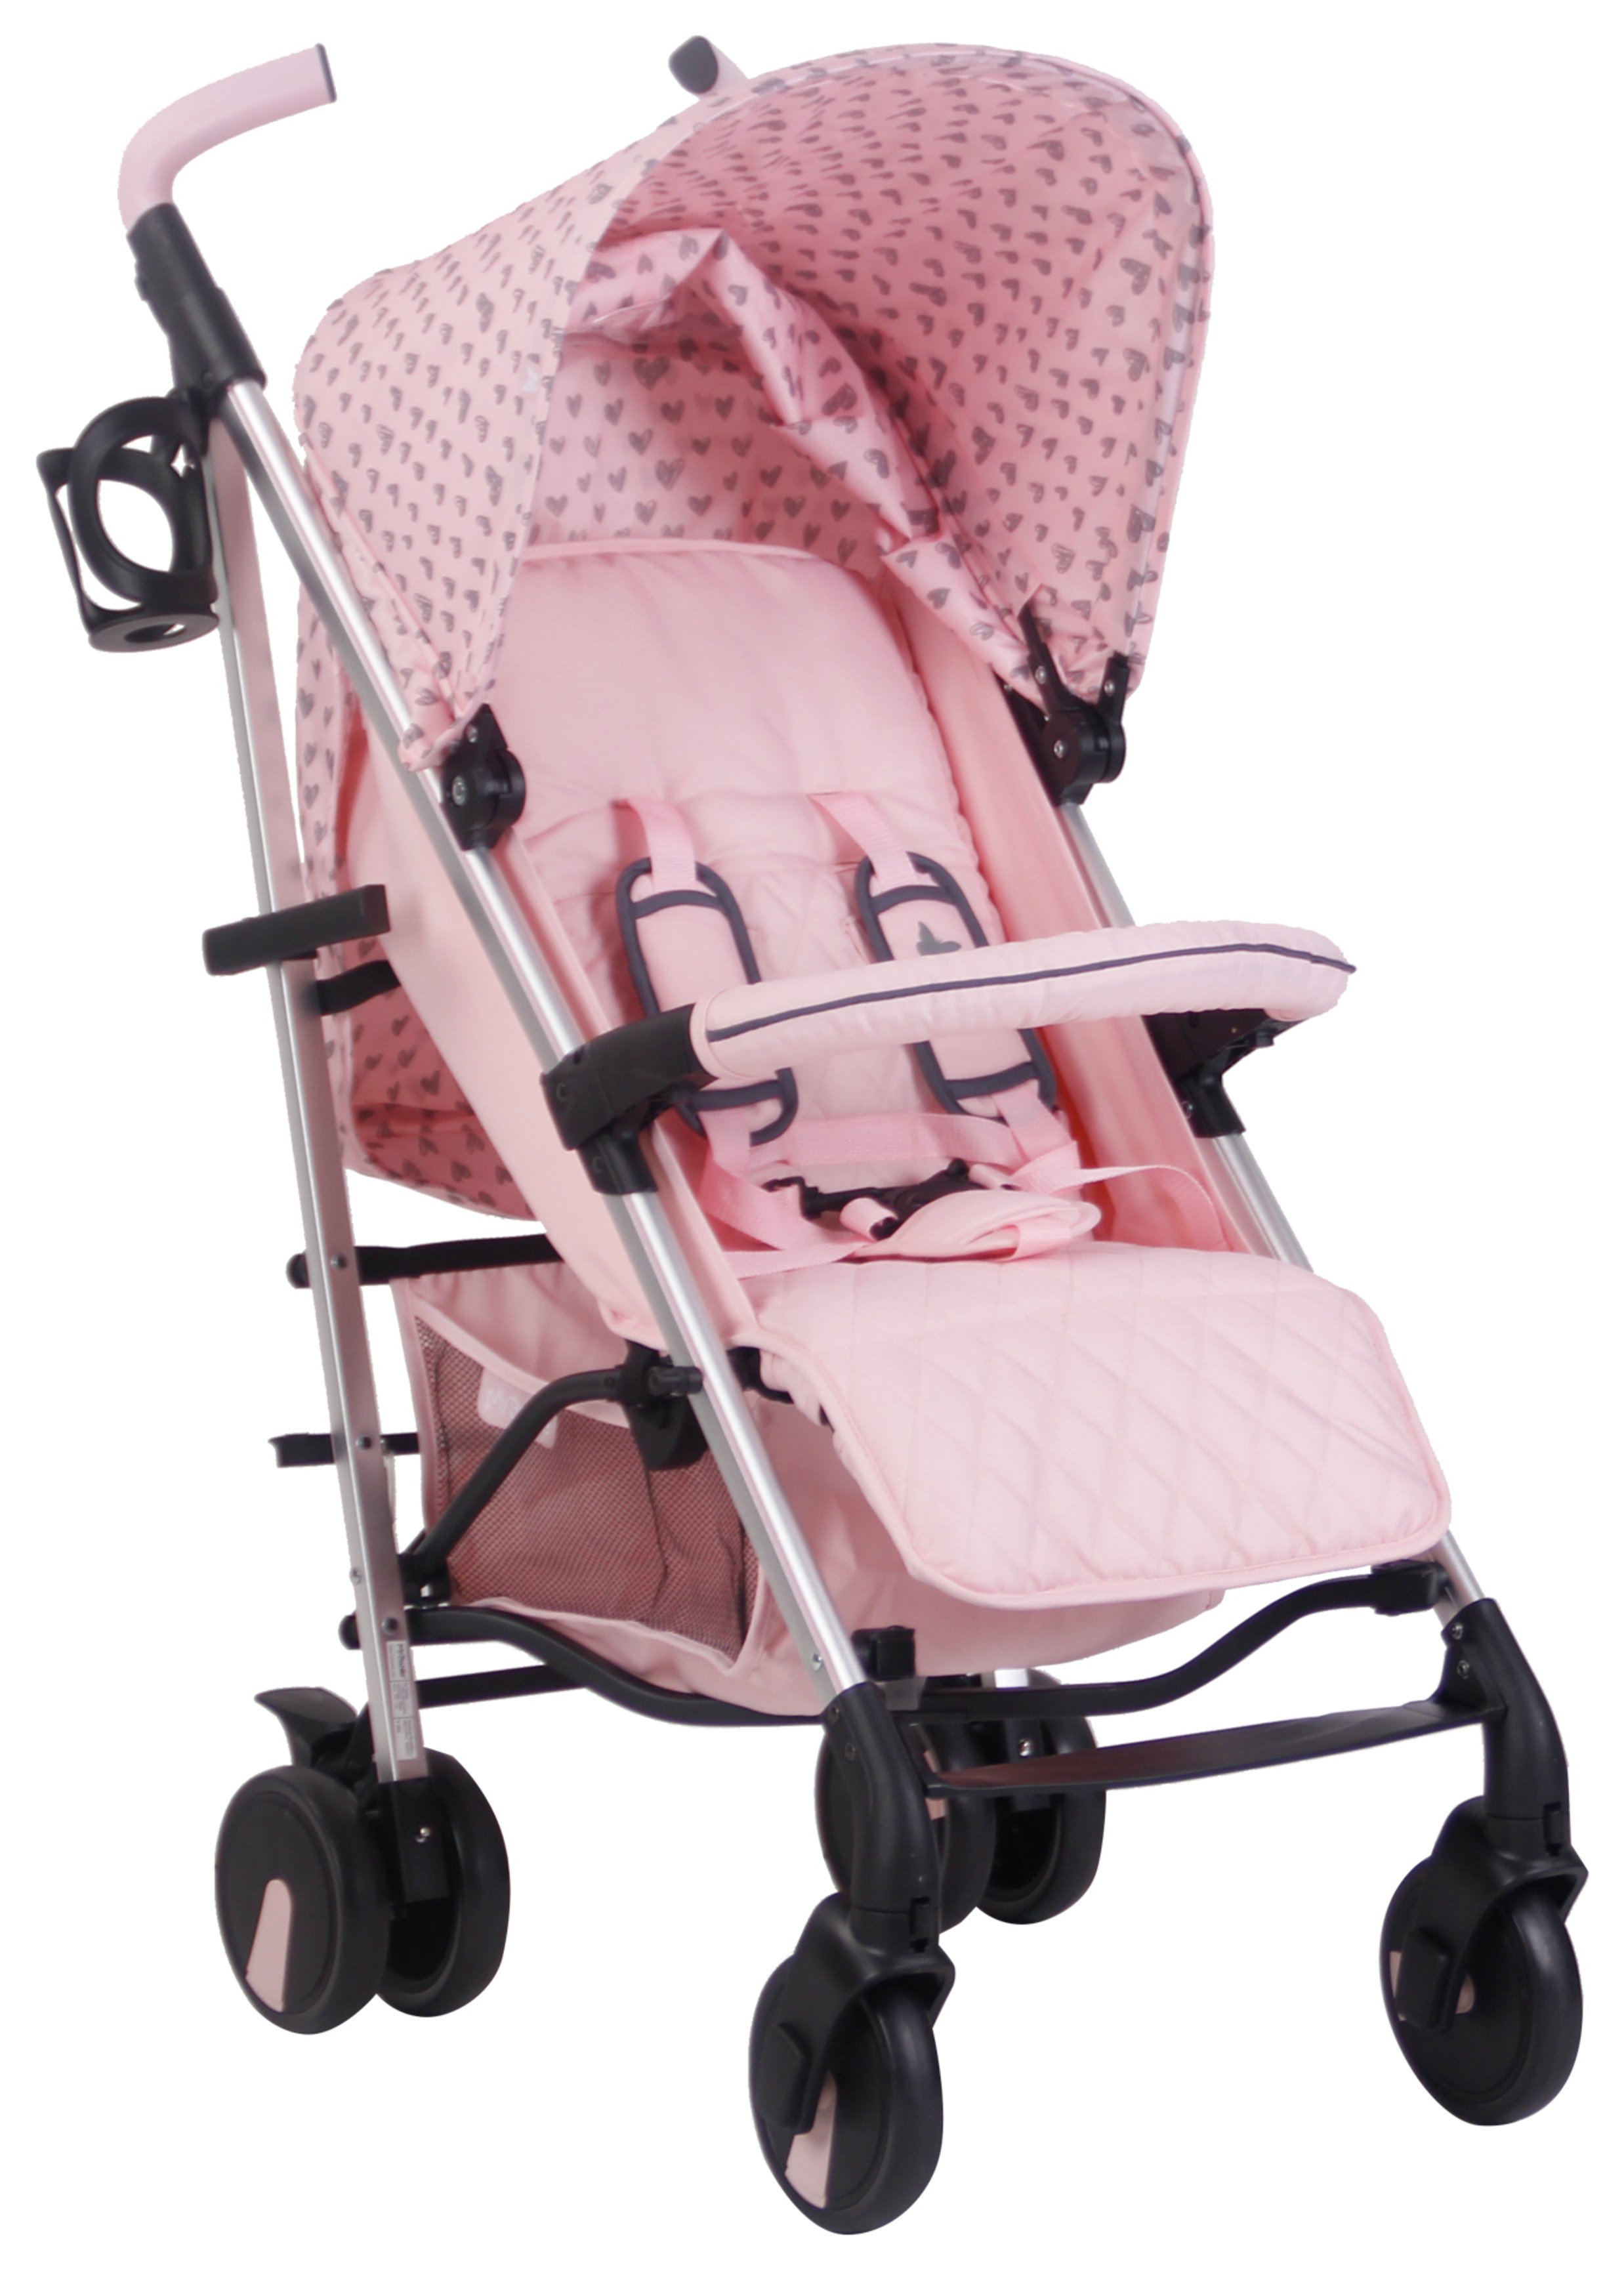 babiie pink stroller